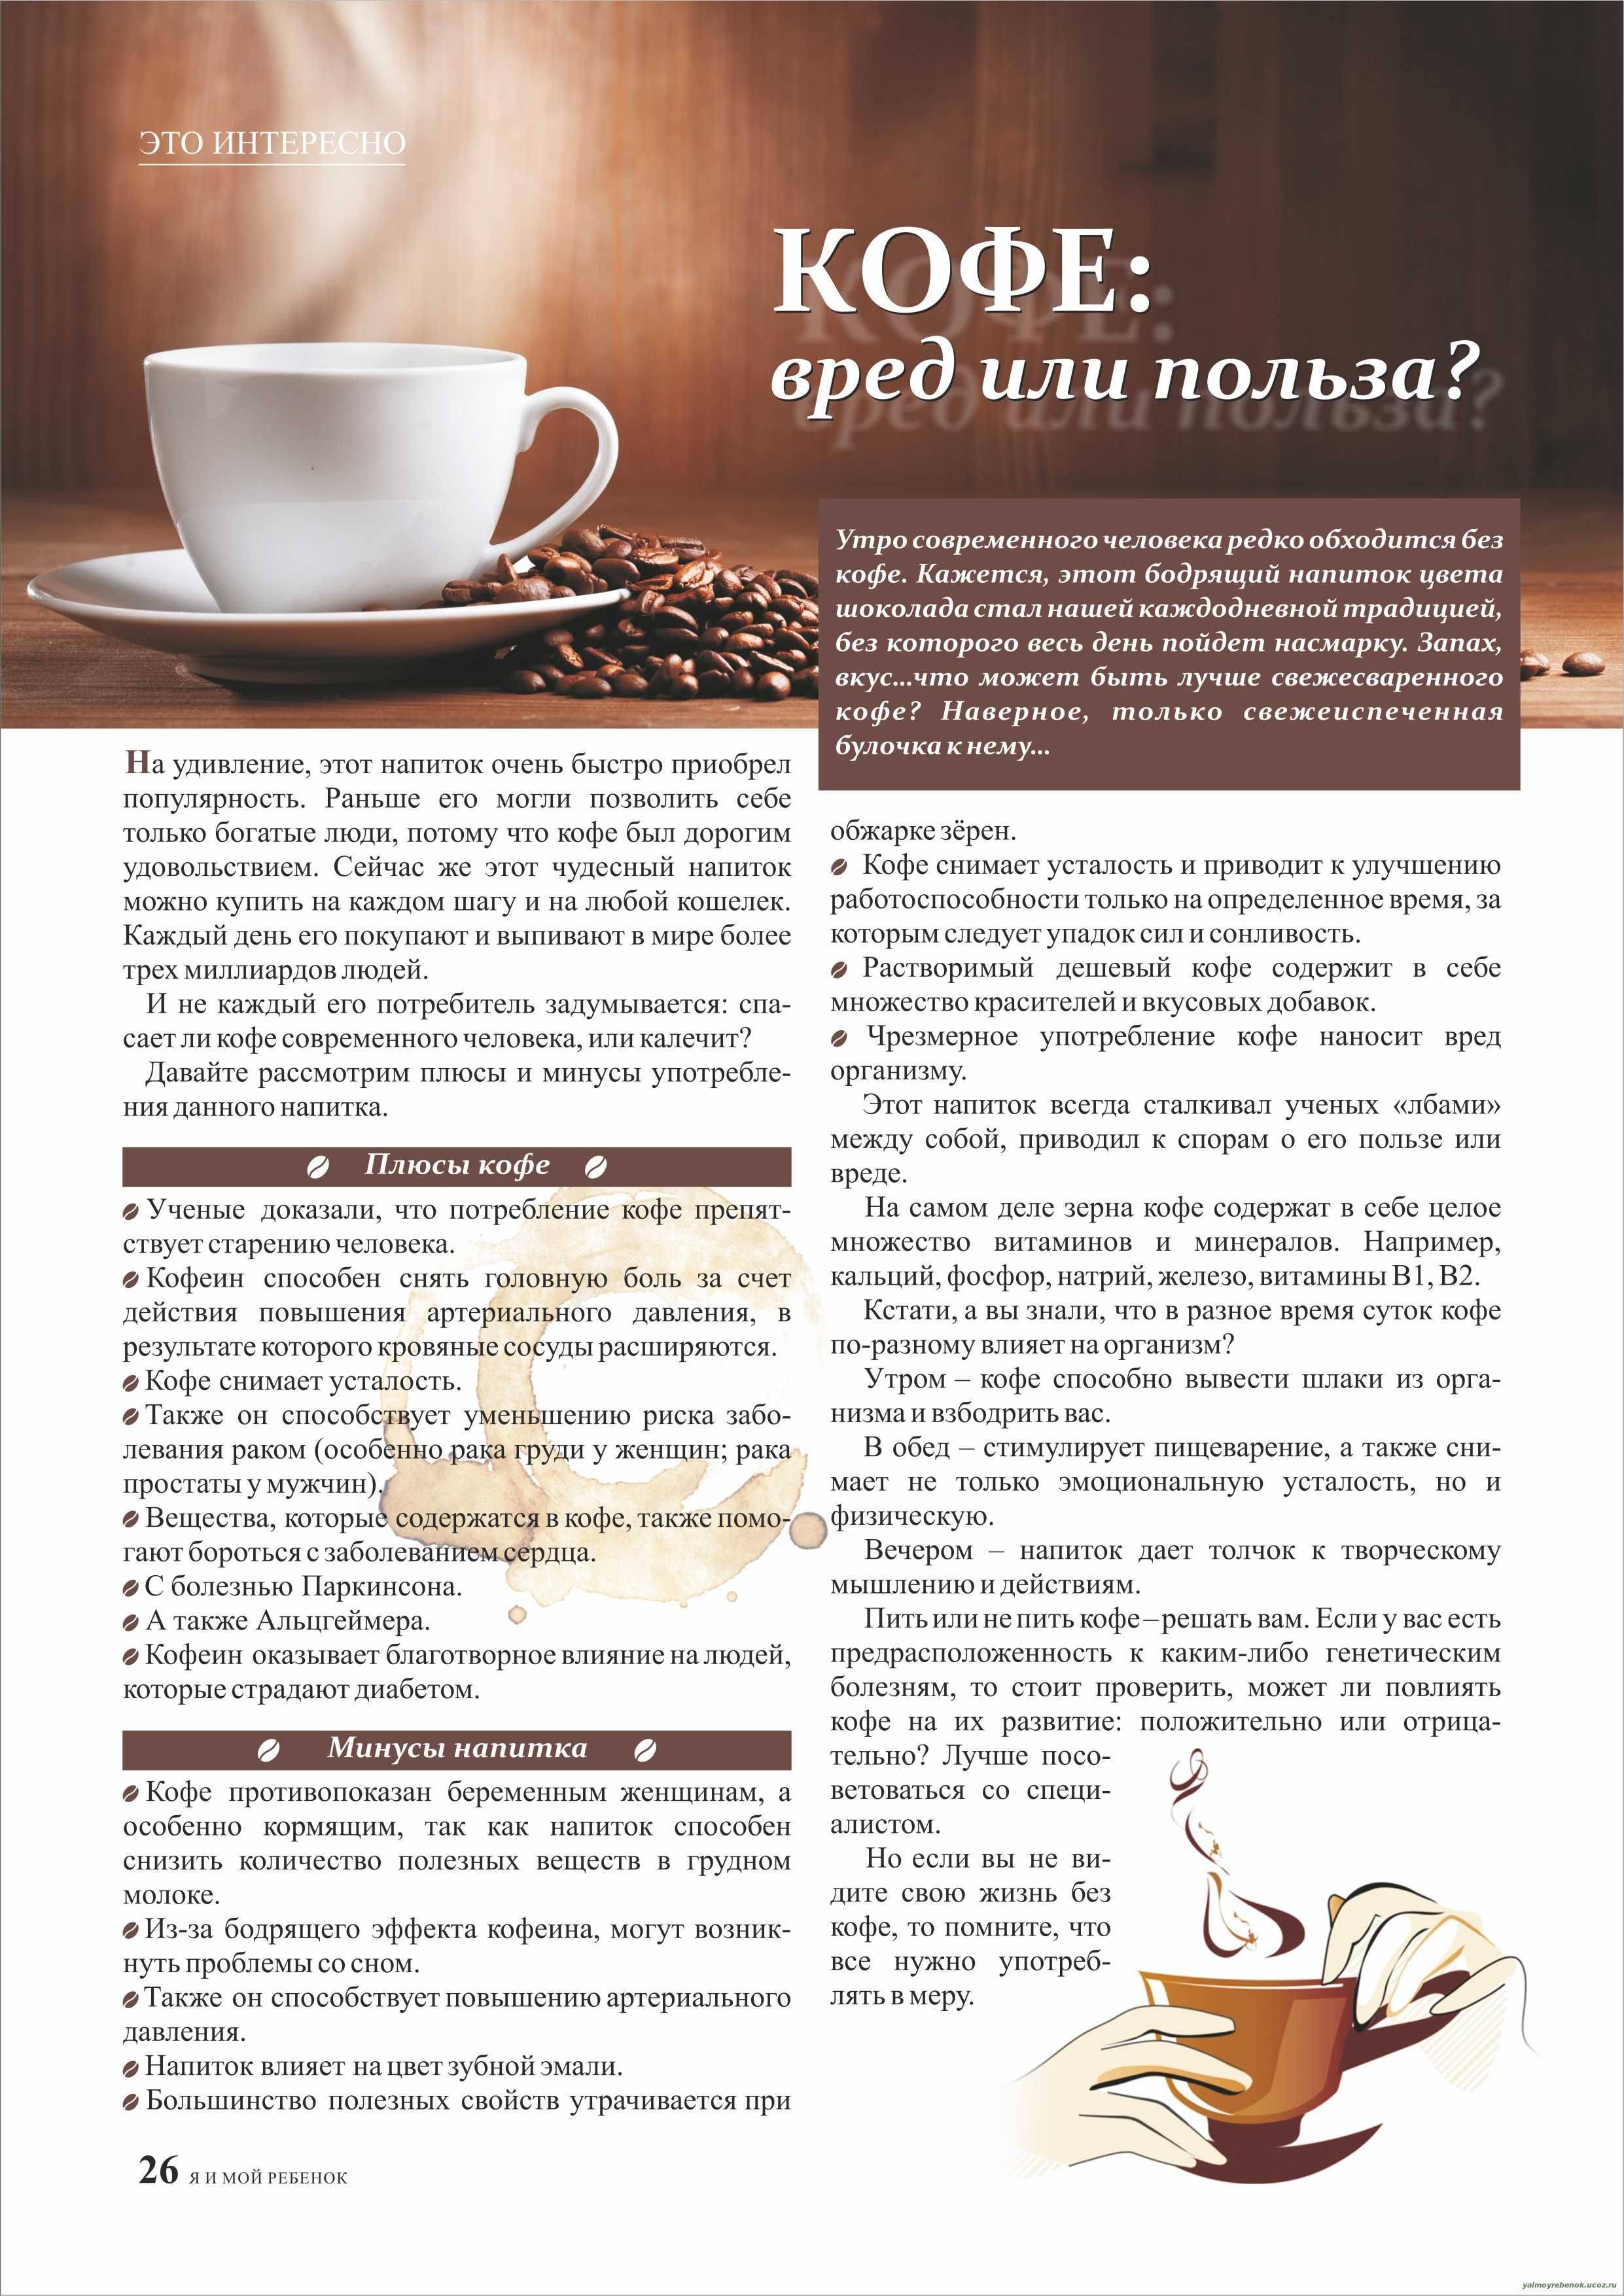 Польза и вред кофе для здоровья человека: натуральный или растворимый